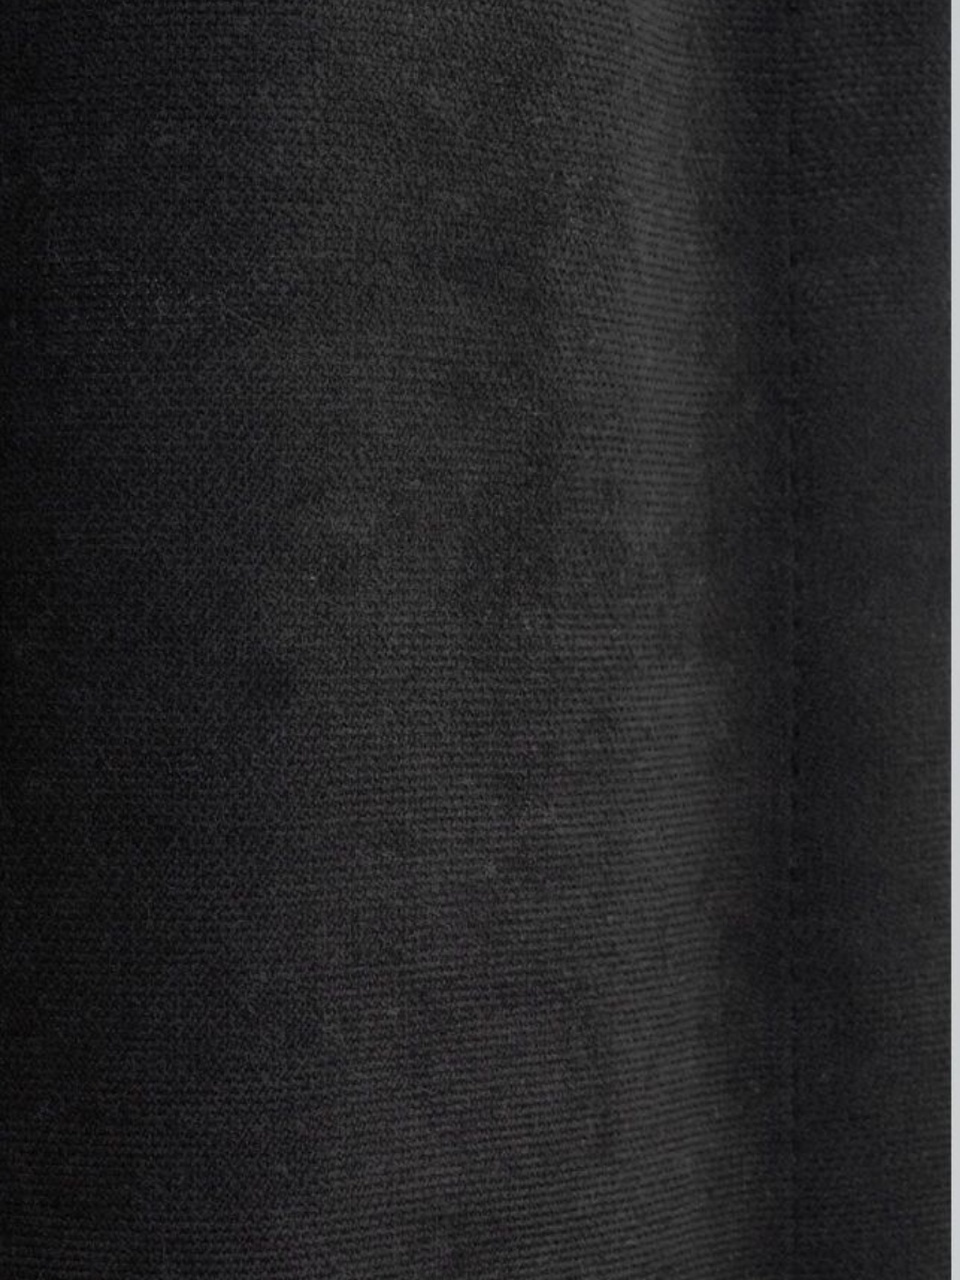 Портьеры Канвас чёрный - 600 ₽, заказать онлайн.